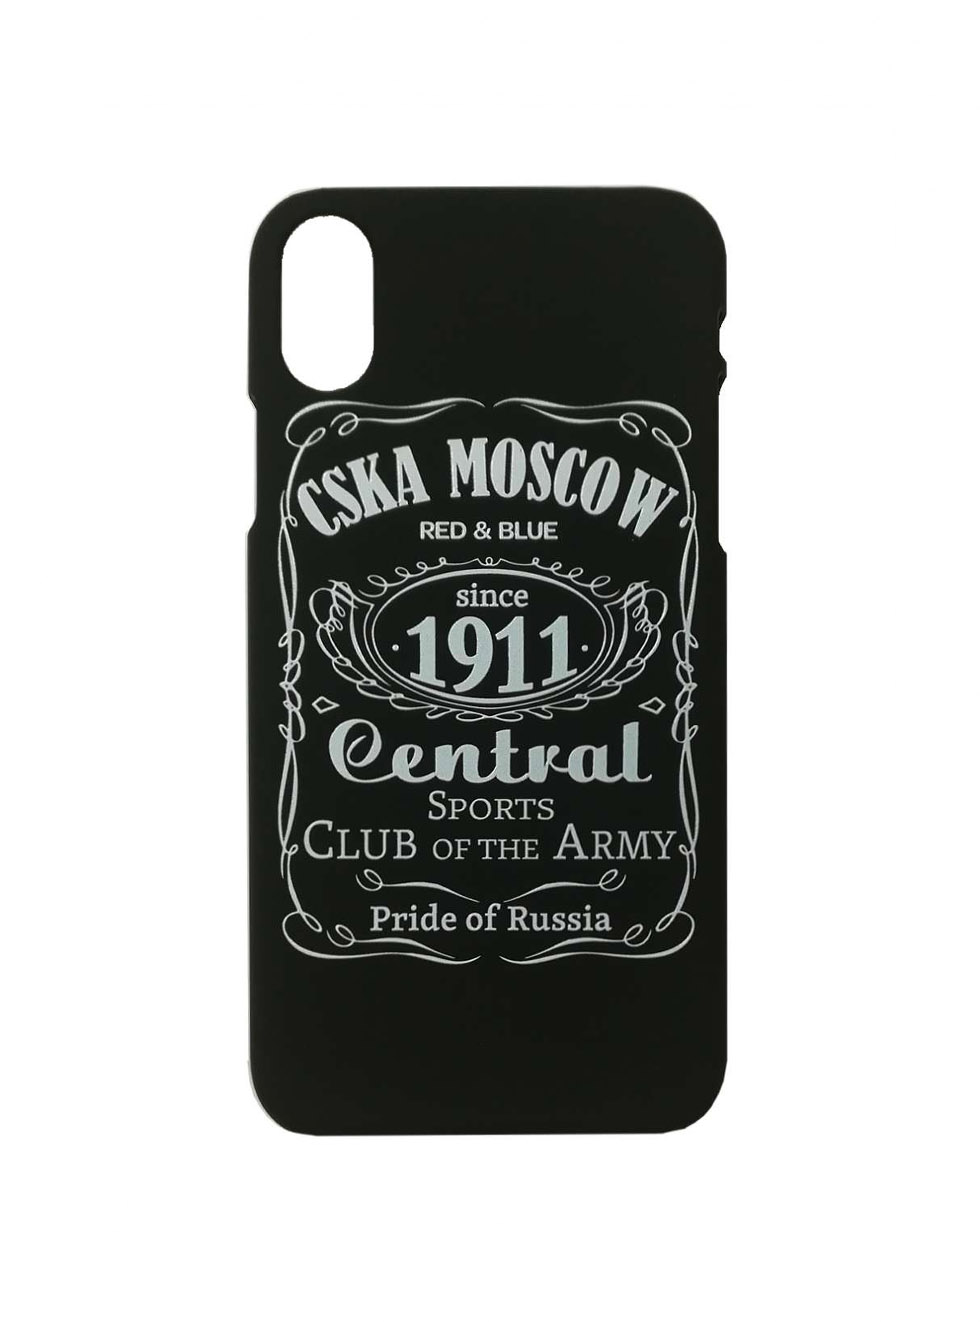 фото Клип-кейс для iphone "cska moscow 1911" cover, цвет чёрный (iphone 5/5s) невский сергей андреевич ип